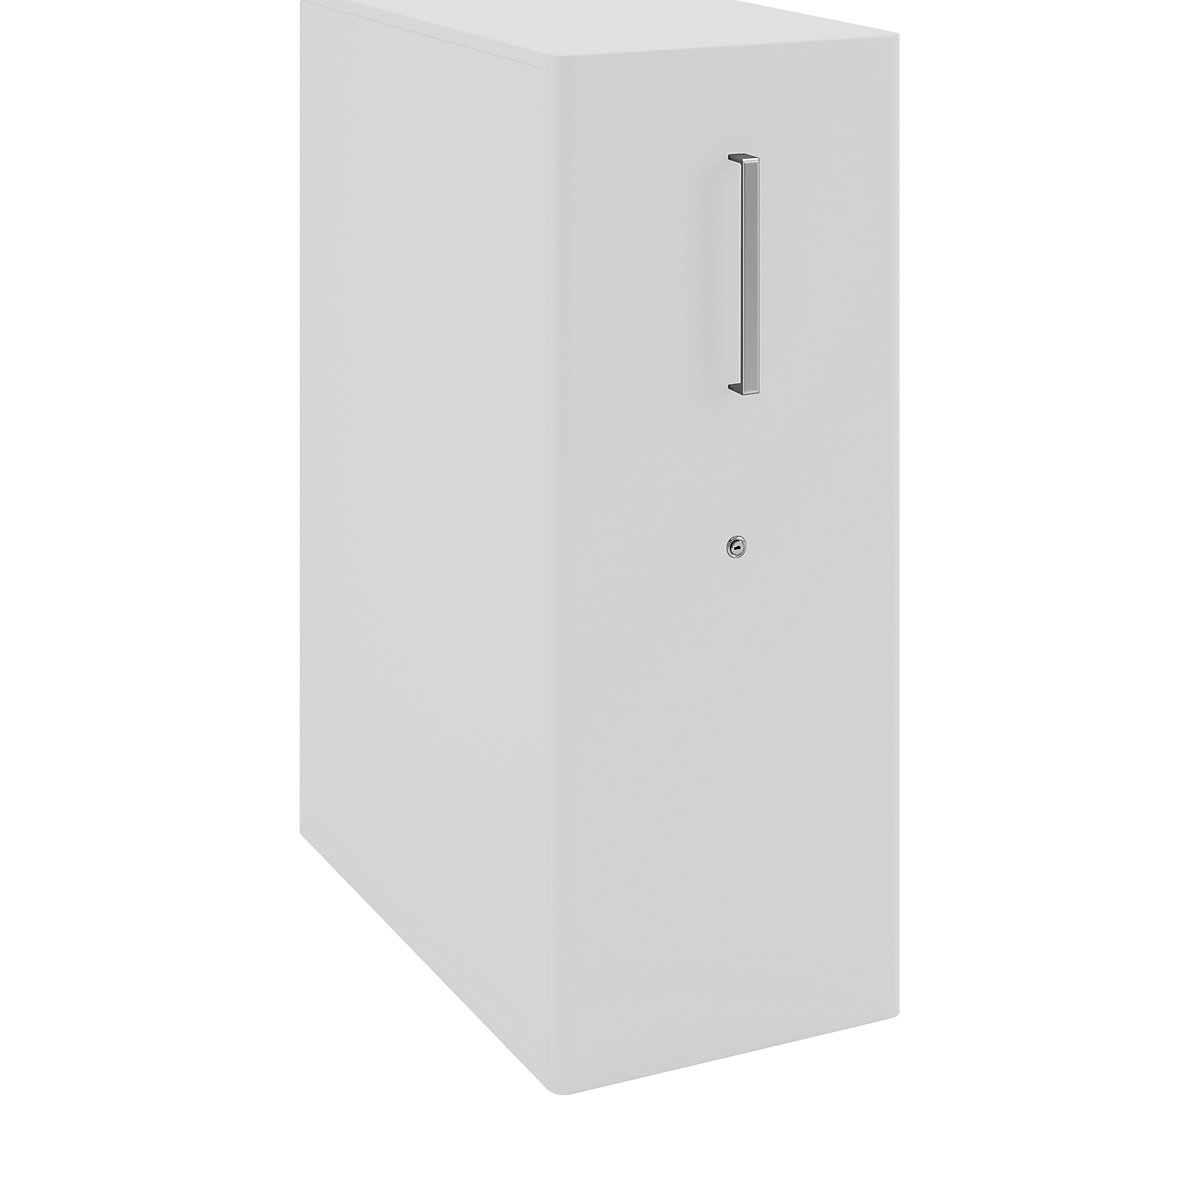 Asistenční nábytek Tower™ 4, s krycí deskou, 1 nástěnka – BISLEY